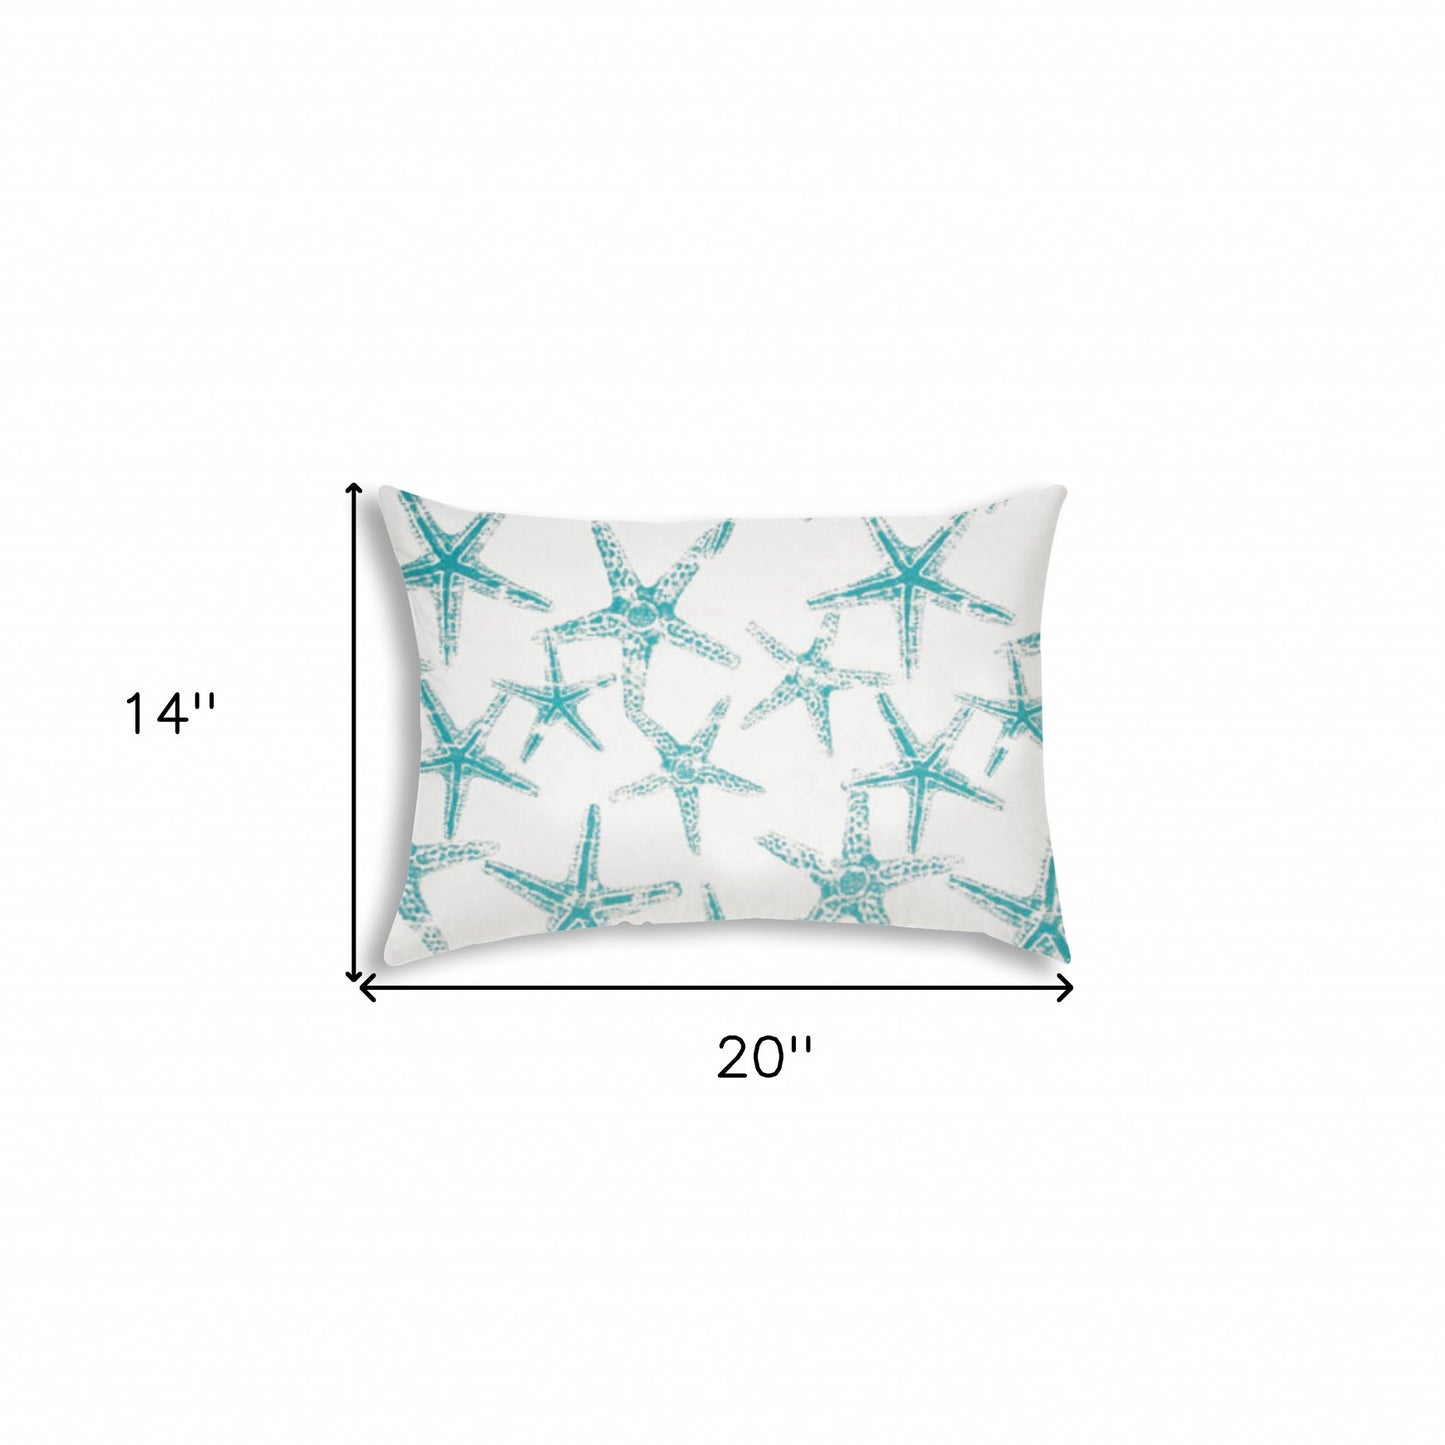 14" X 20" Turquoise And White Starfish Blown Seam Nautical Lumbar Indoor Outdoor Pillow